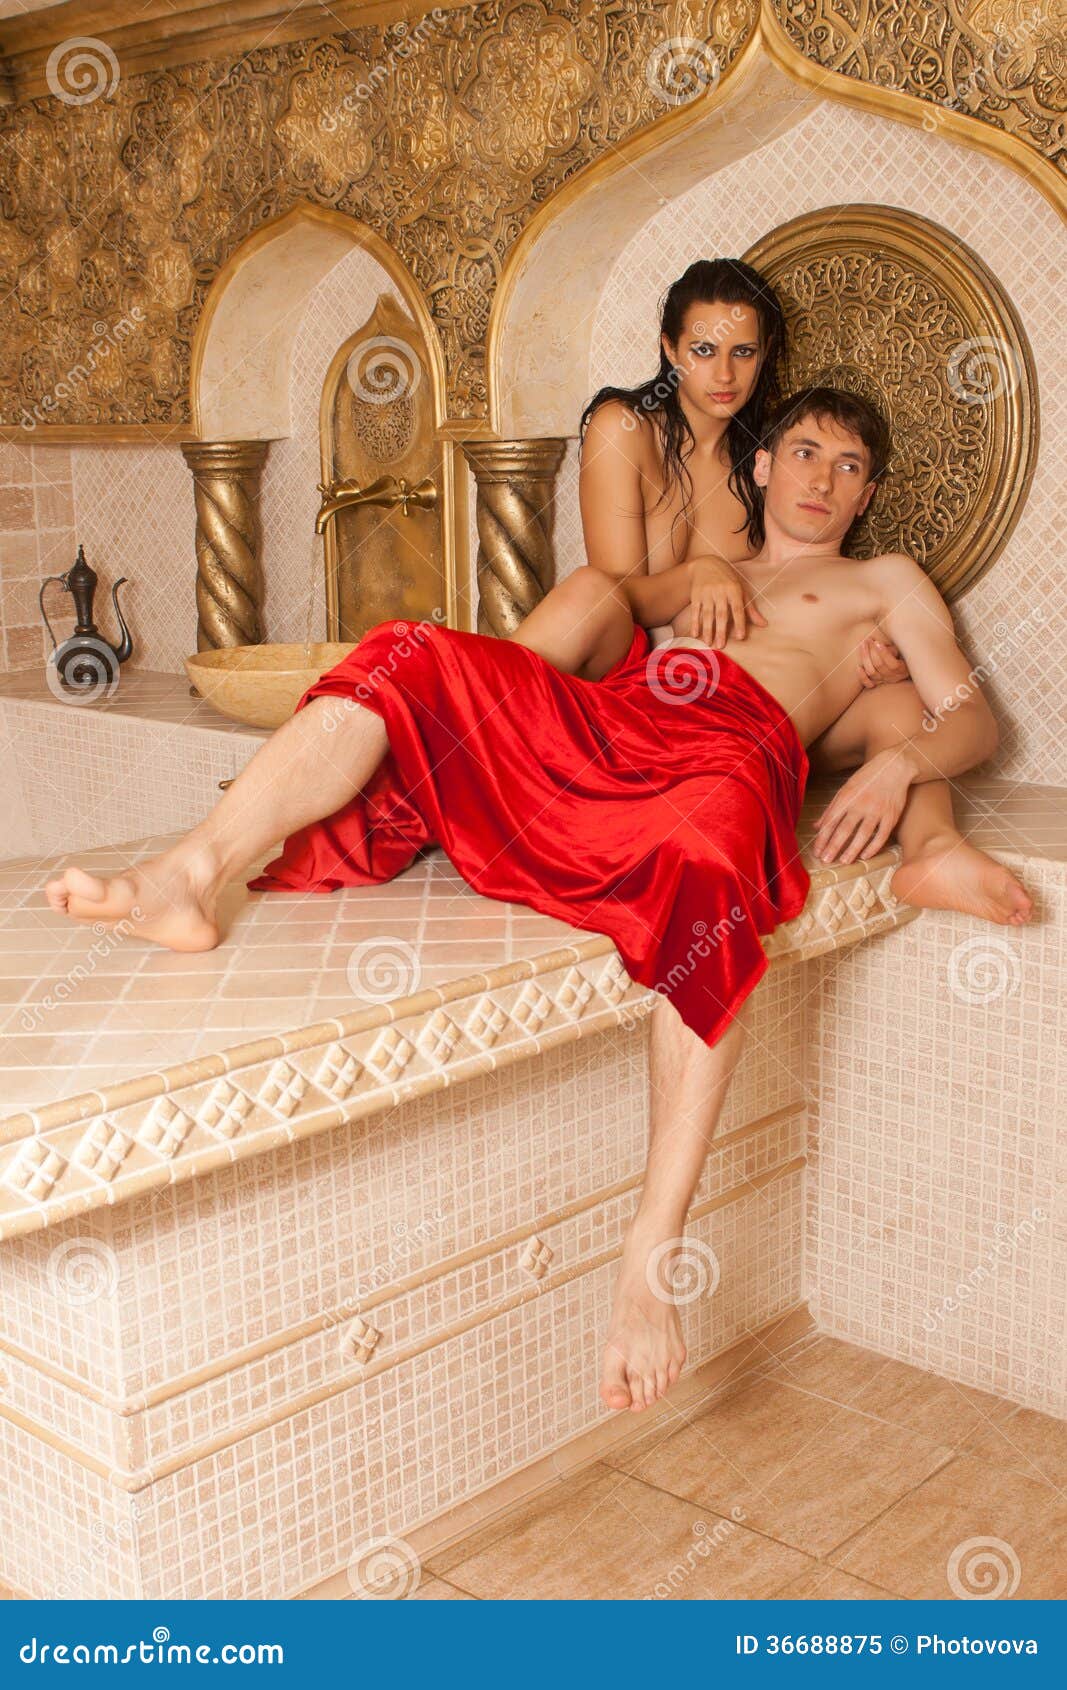 Women Naked In Bath 17